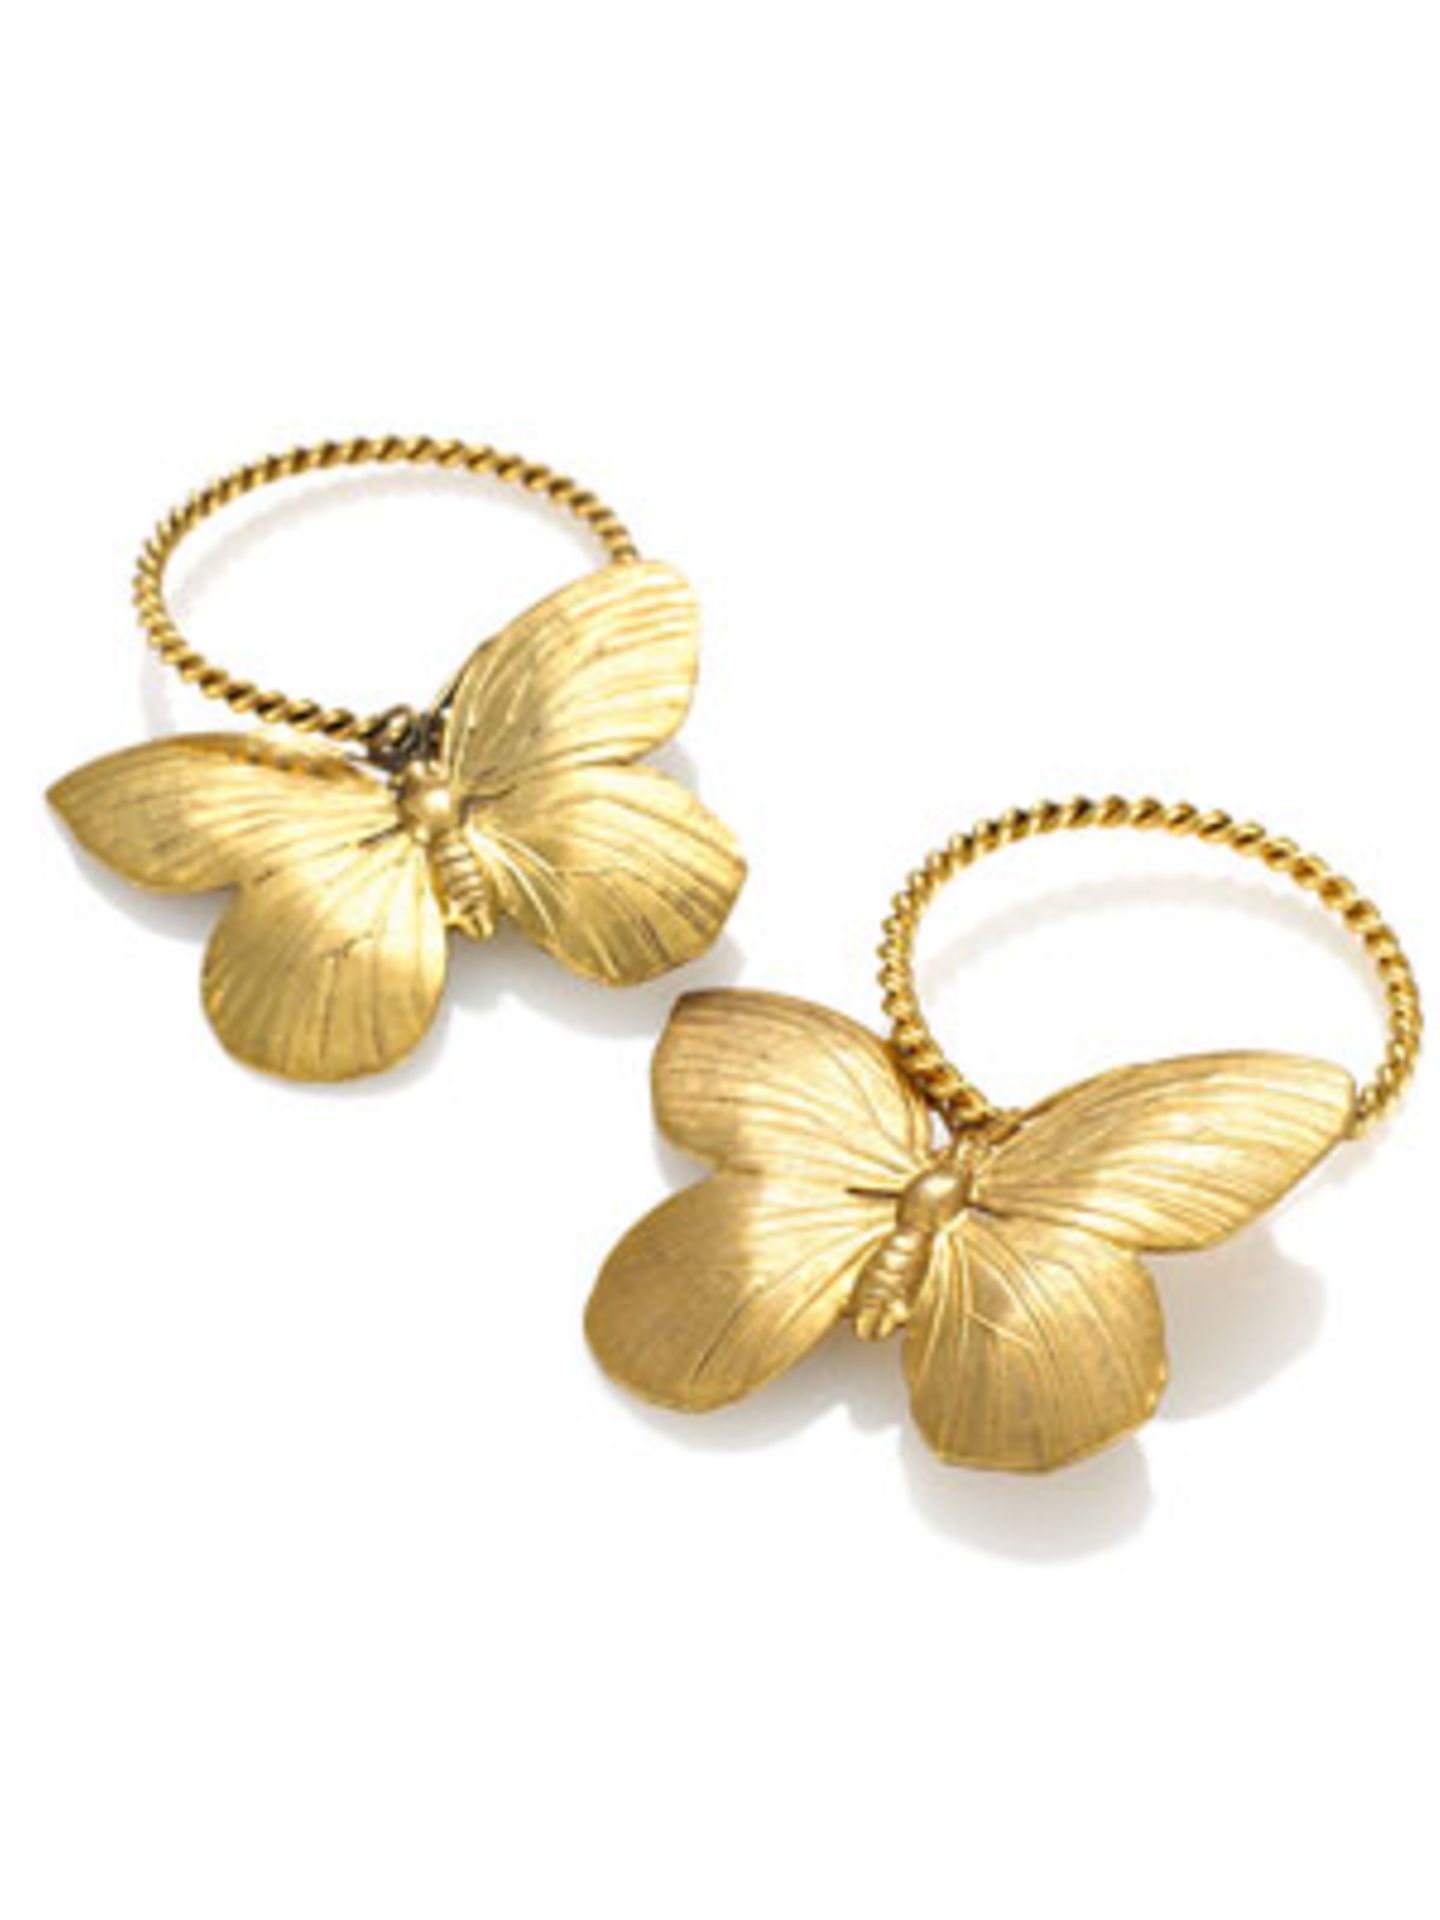 Goldene Creolen mit Schmetterlingen von Ela Stone, um 100 Euro. Über www.impressionen.de.